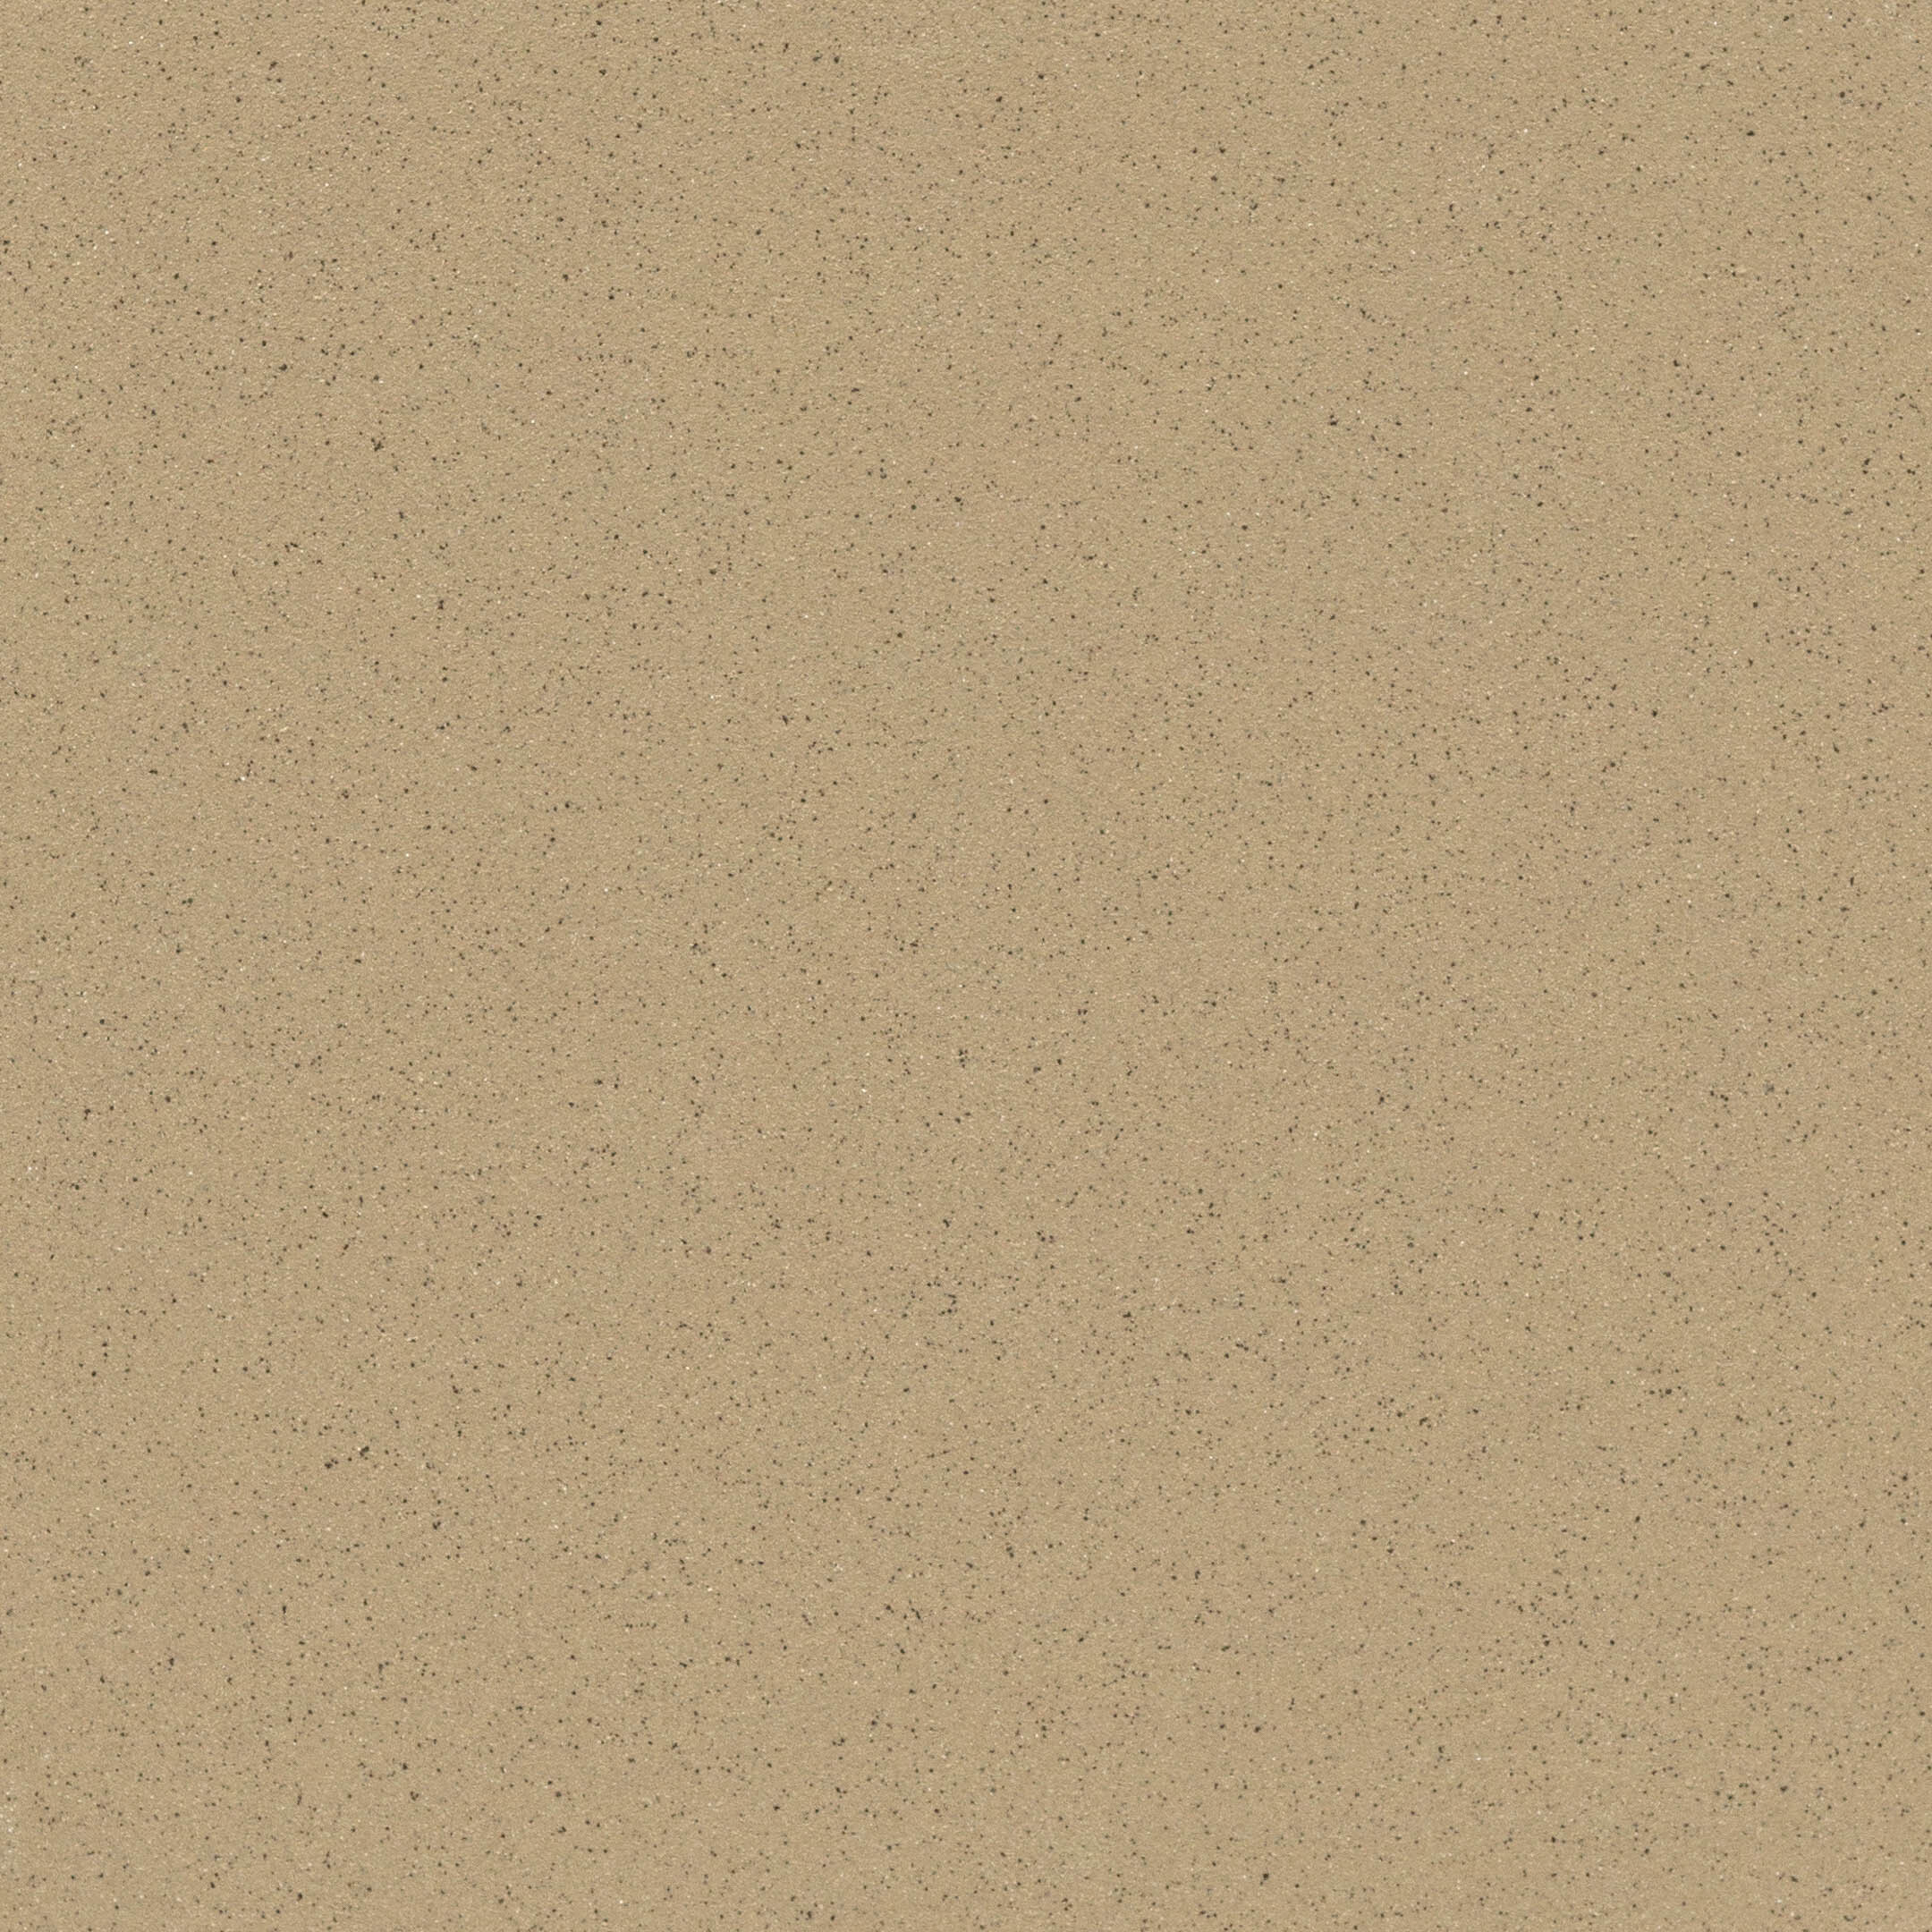 Керамогранит Quadro Decor Грес светло-серый соль-перец 300х300х7 мм (17 шт.=1,53 кв.м) керамогранит quadro decor соль перец 30x30 см 1 44 м2 неполированный цвет светло серый